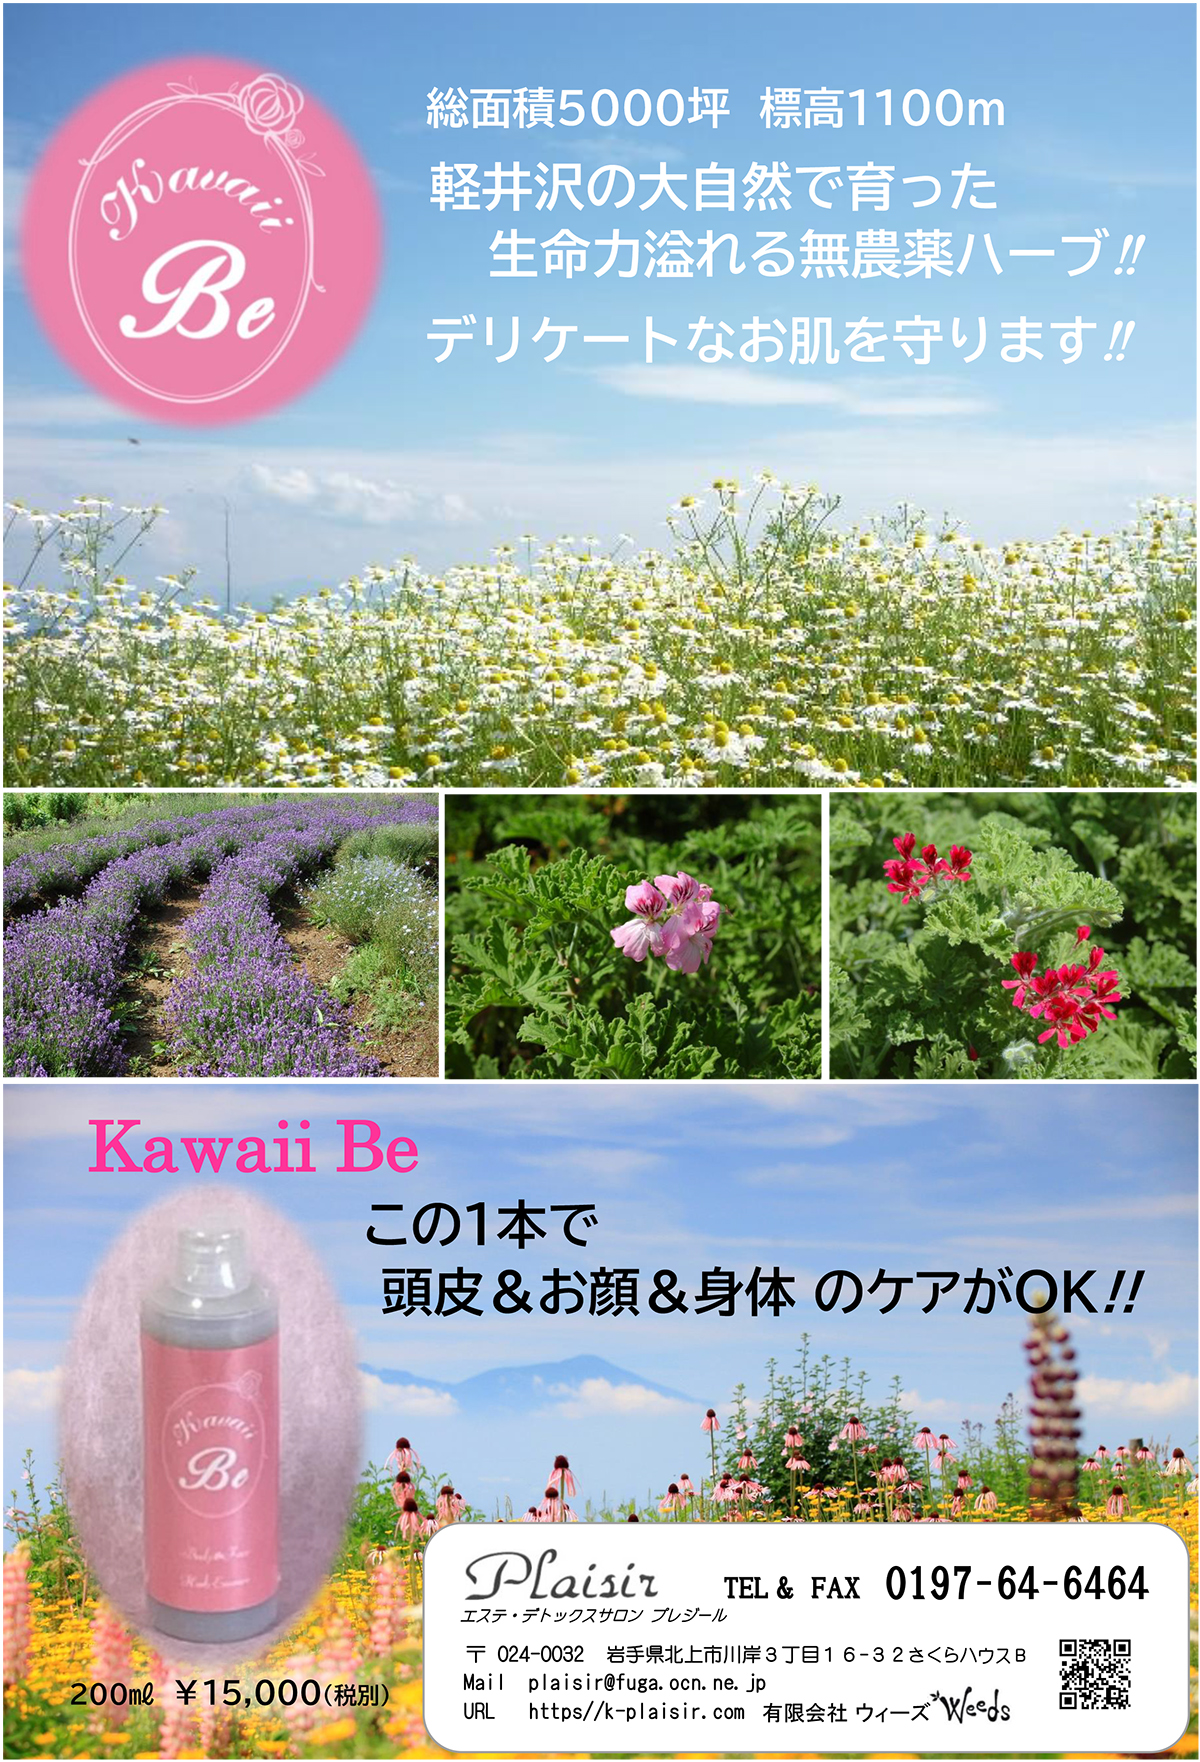 Kawaii Be商品チラシ